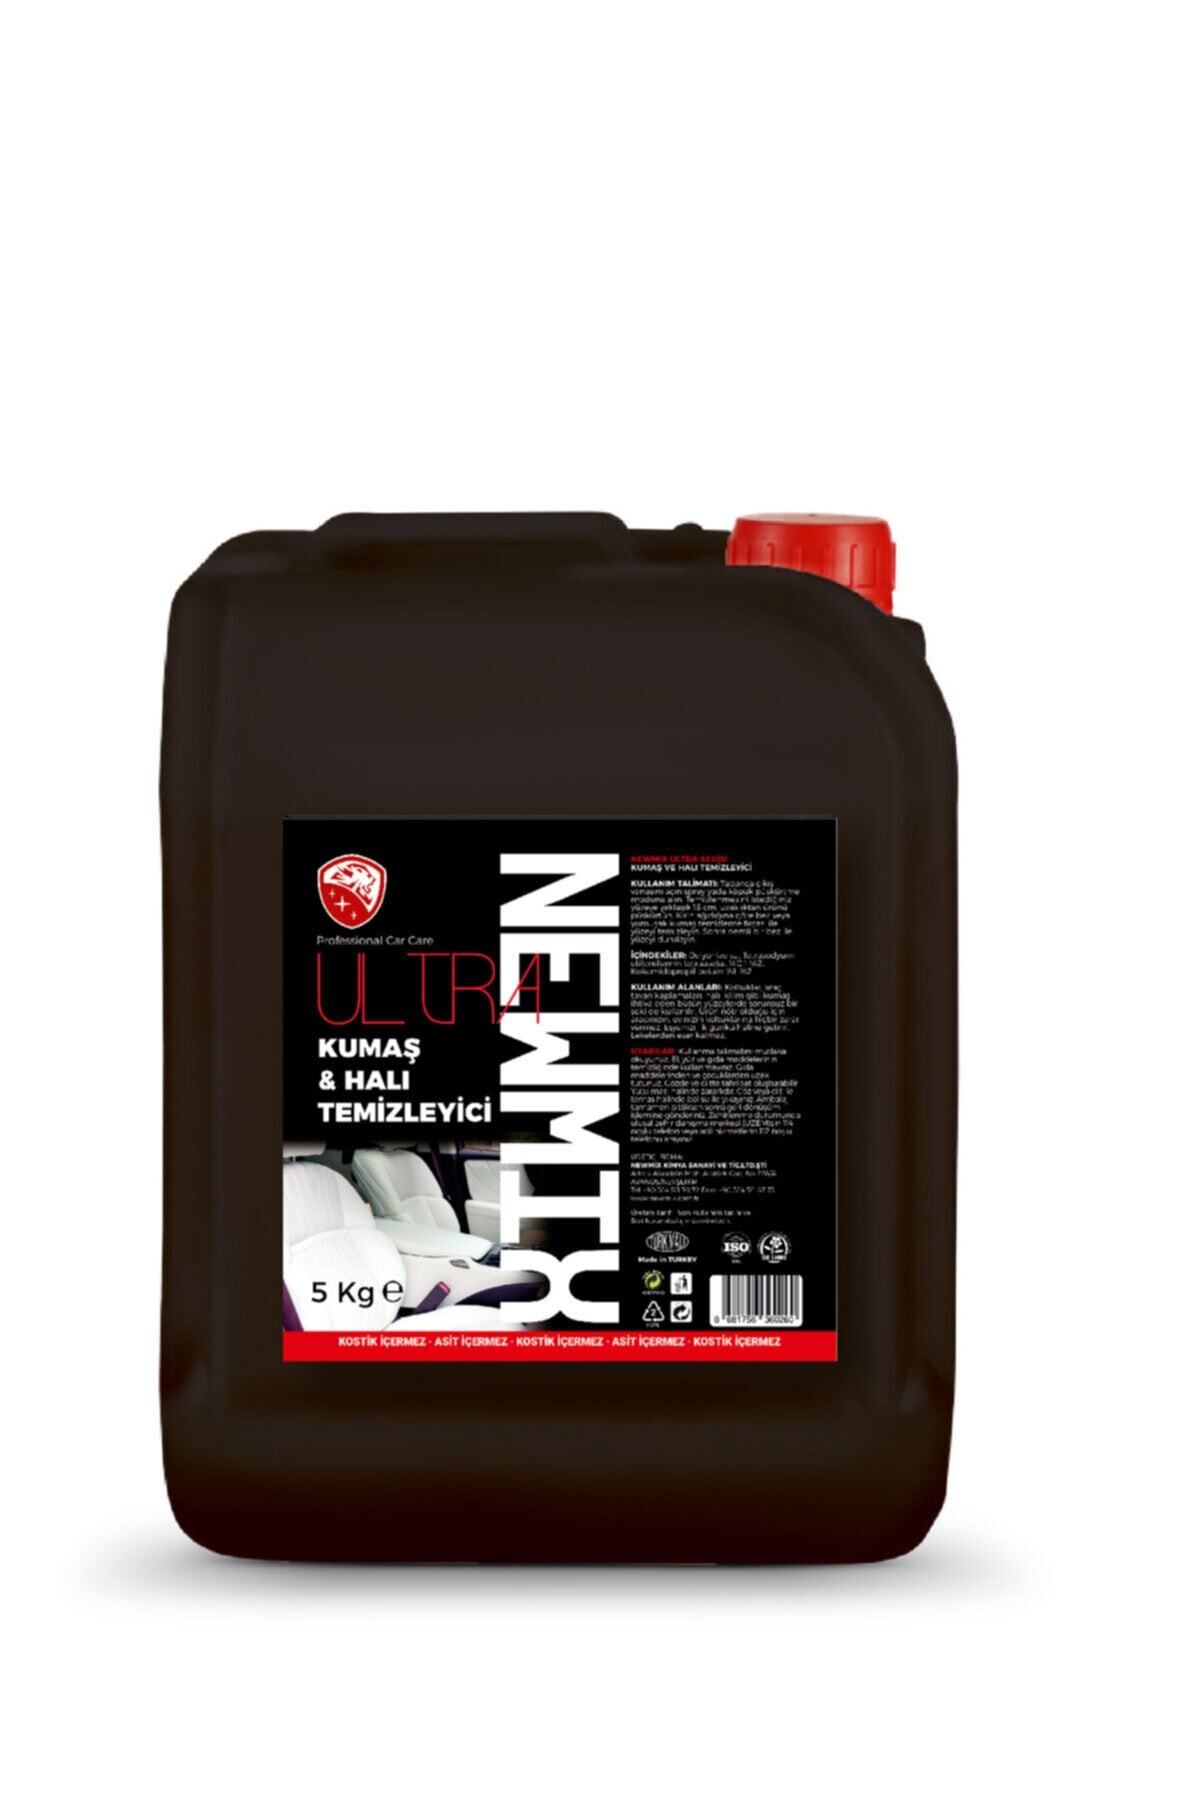 Newmix Kumaş Ve Halı Temizleyici - 5 Kg